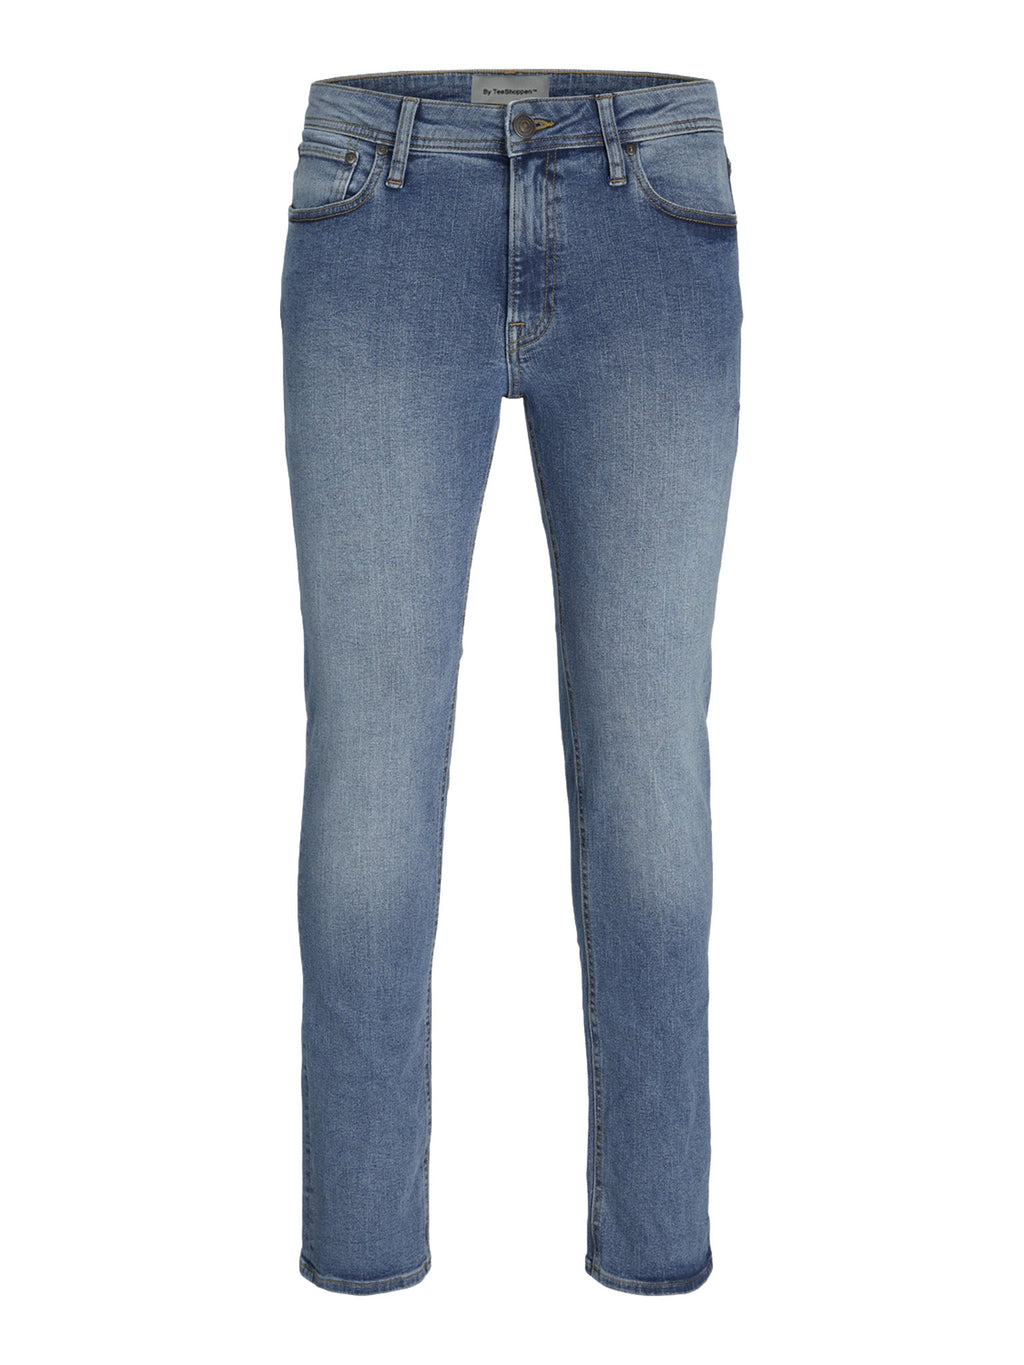 Los jeans de rendimiento originales (regulares) - mezclilla azul claro